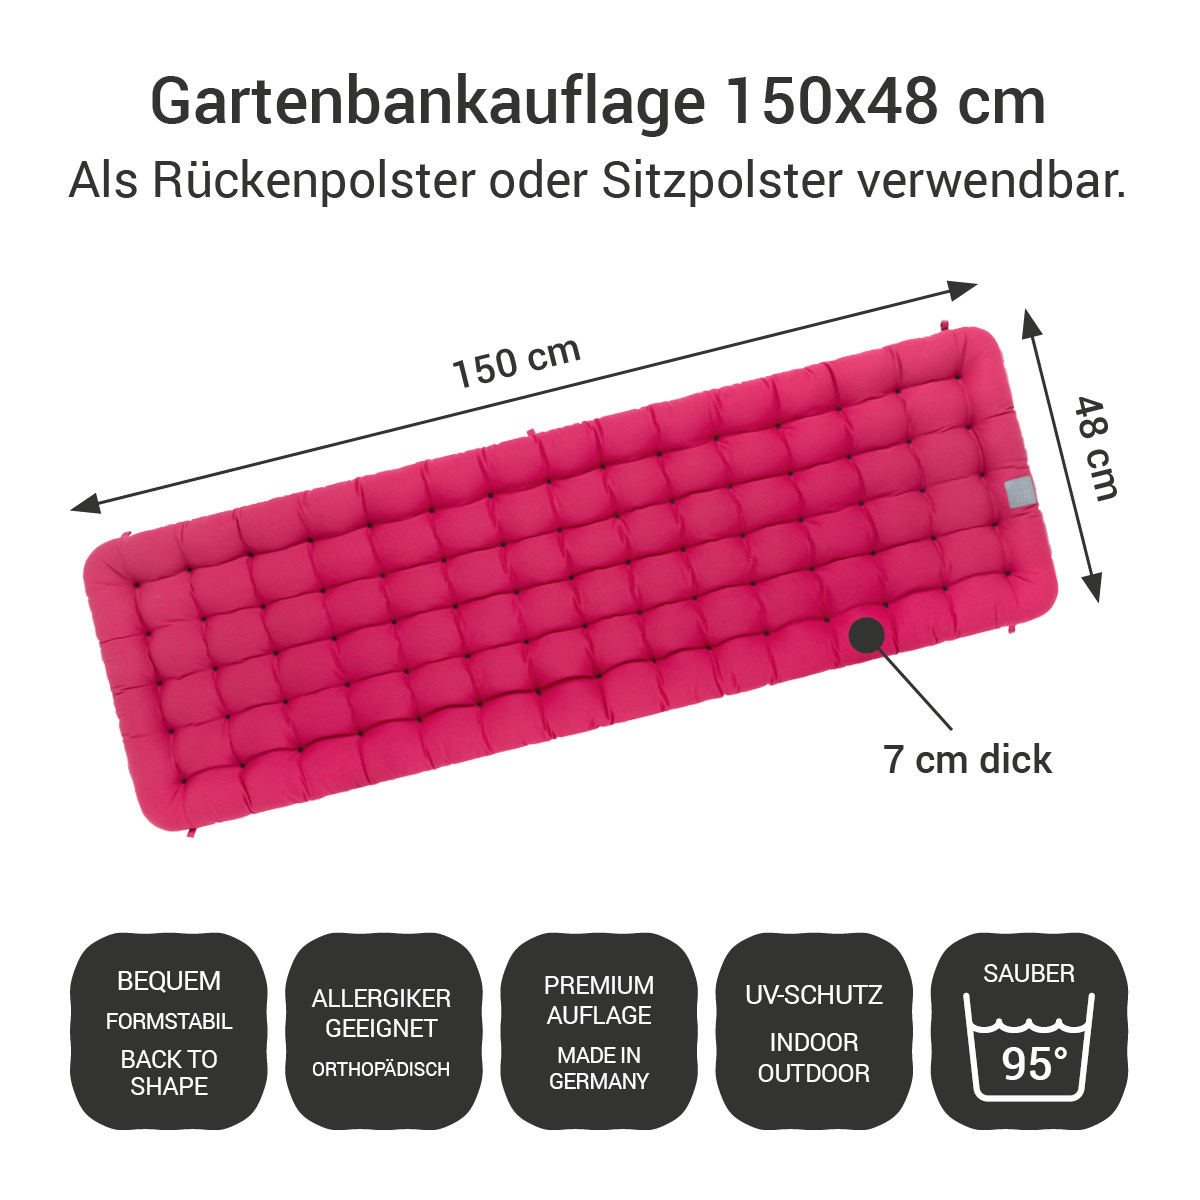 Gartenbank Auflagen (2tlg.) pink 150x48 cm / 150 x 50 cm | bequem & orthopädisch, komplett im Ganzen waschbar bis 95°C, wetterfest, Made in Germany